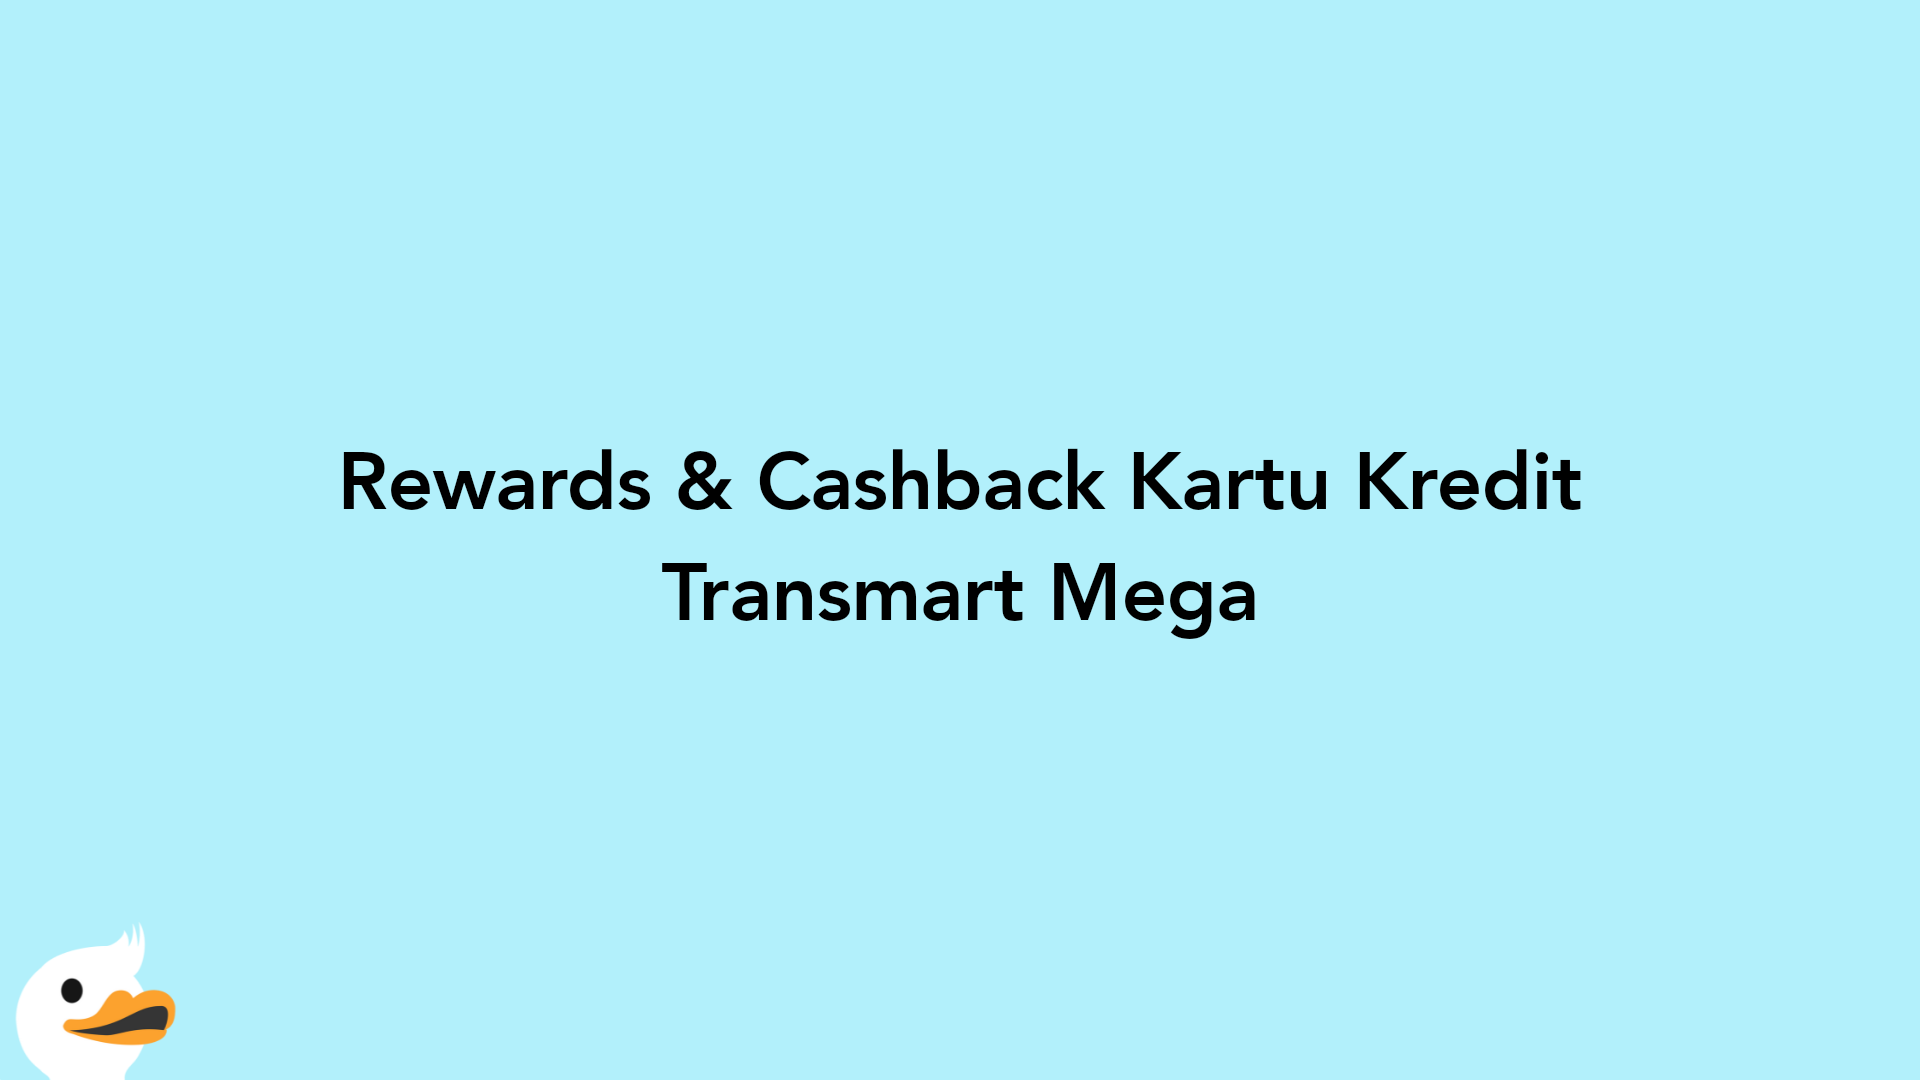 Rewards & Cashback Kartu Kredit Transmart Mega